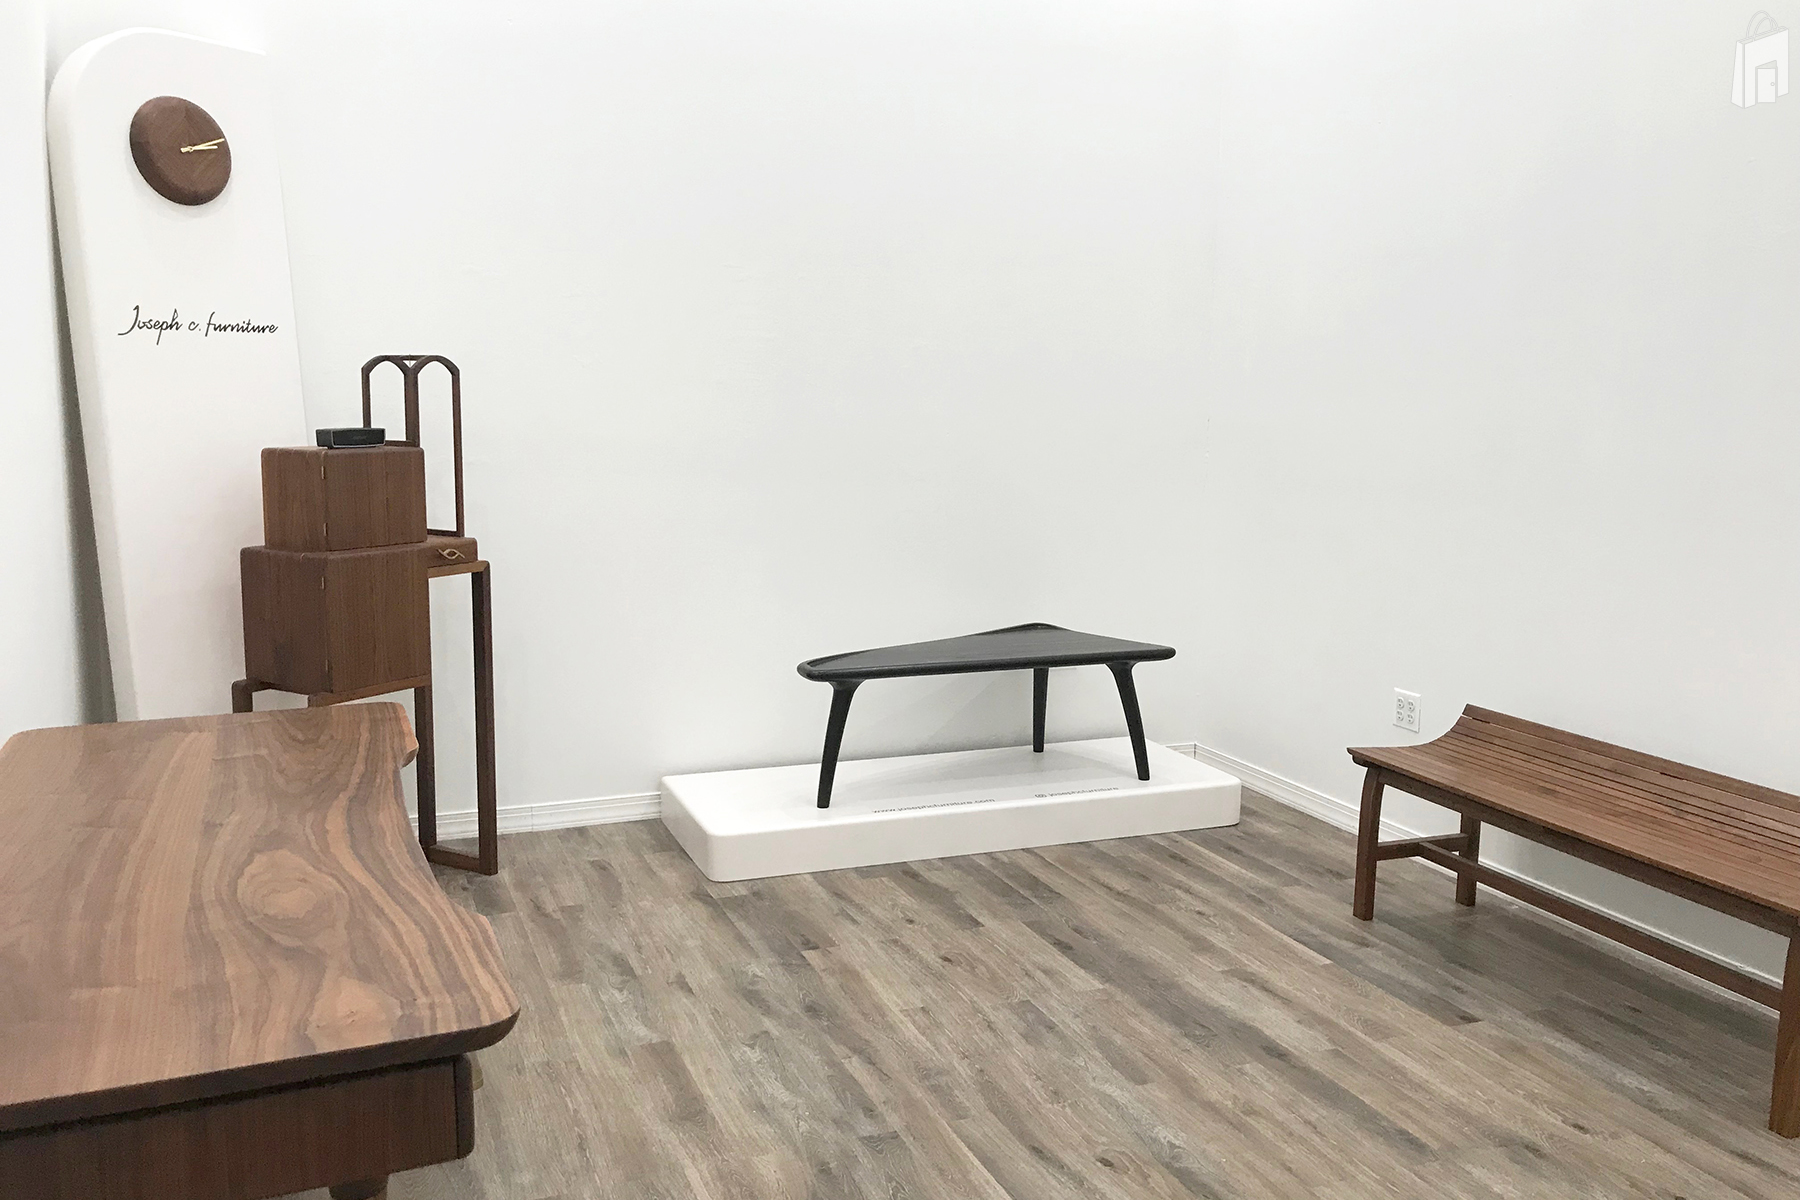 Exhibition Joseph C. Furniture